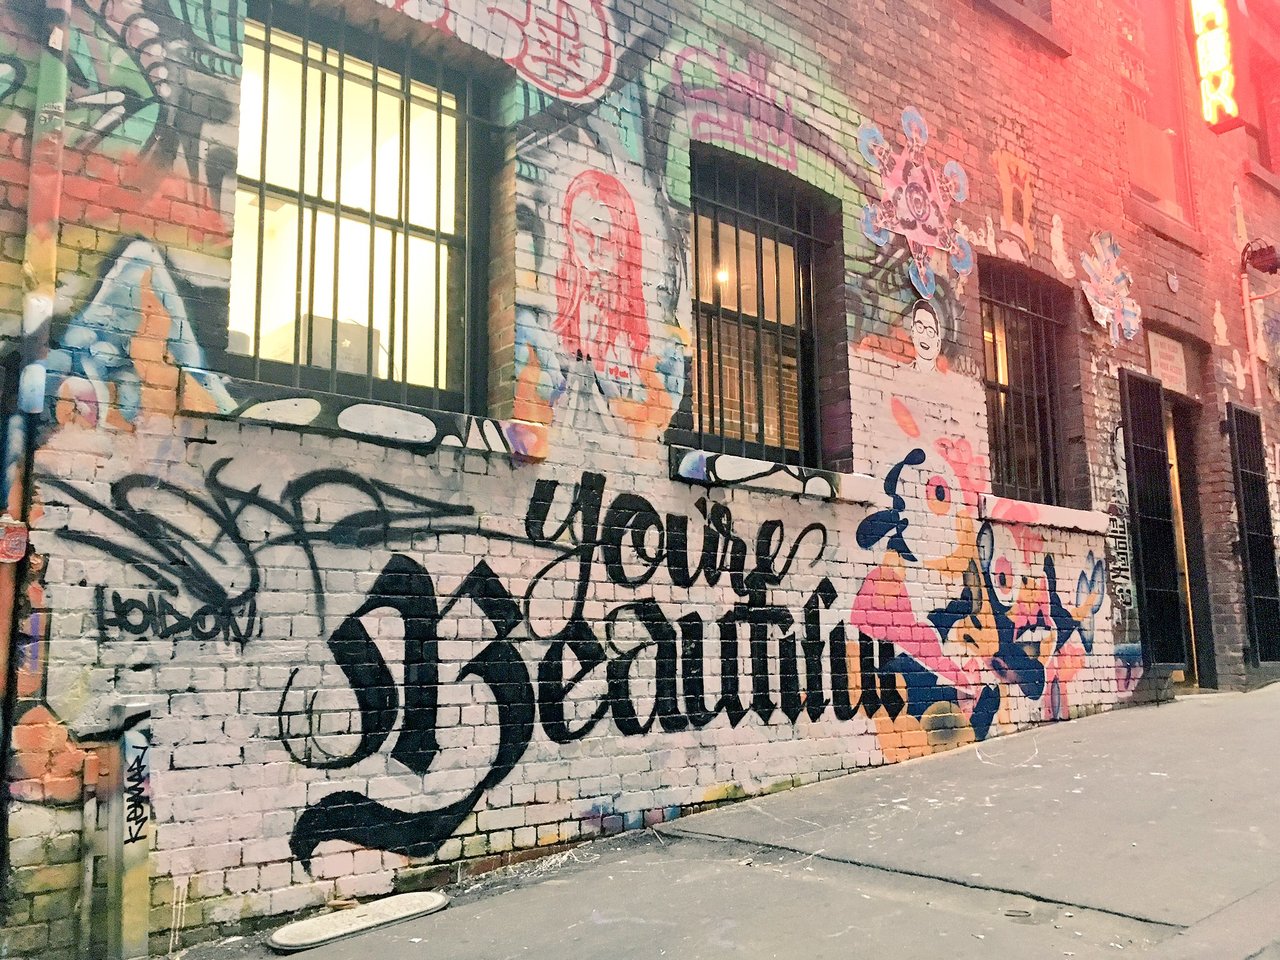 Inspiration in the heart of @Melbourne ... #duckboardplace #laneway #streetart https://t.co/WUnDUyAOBY